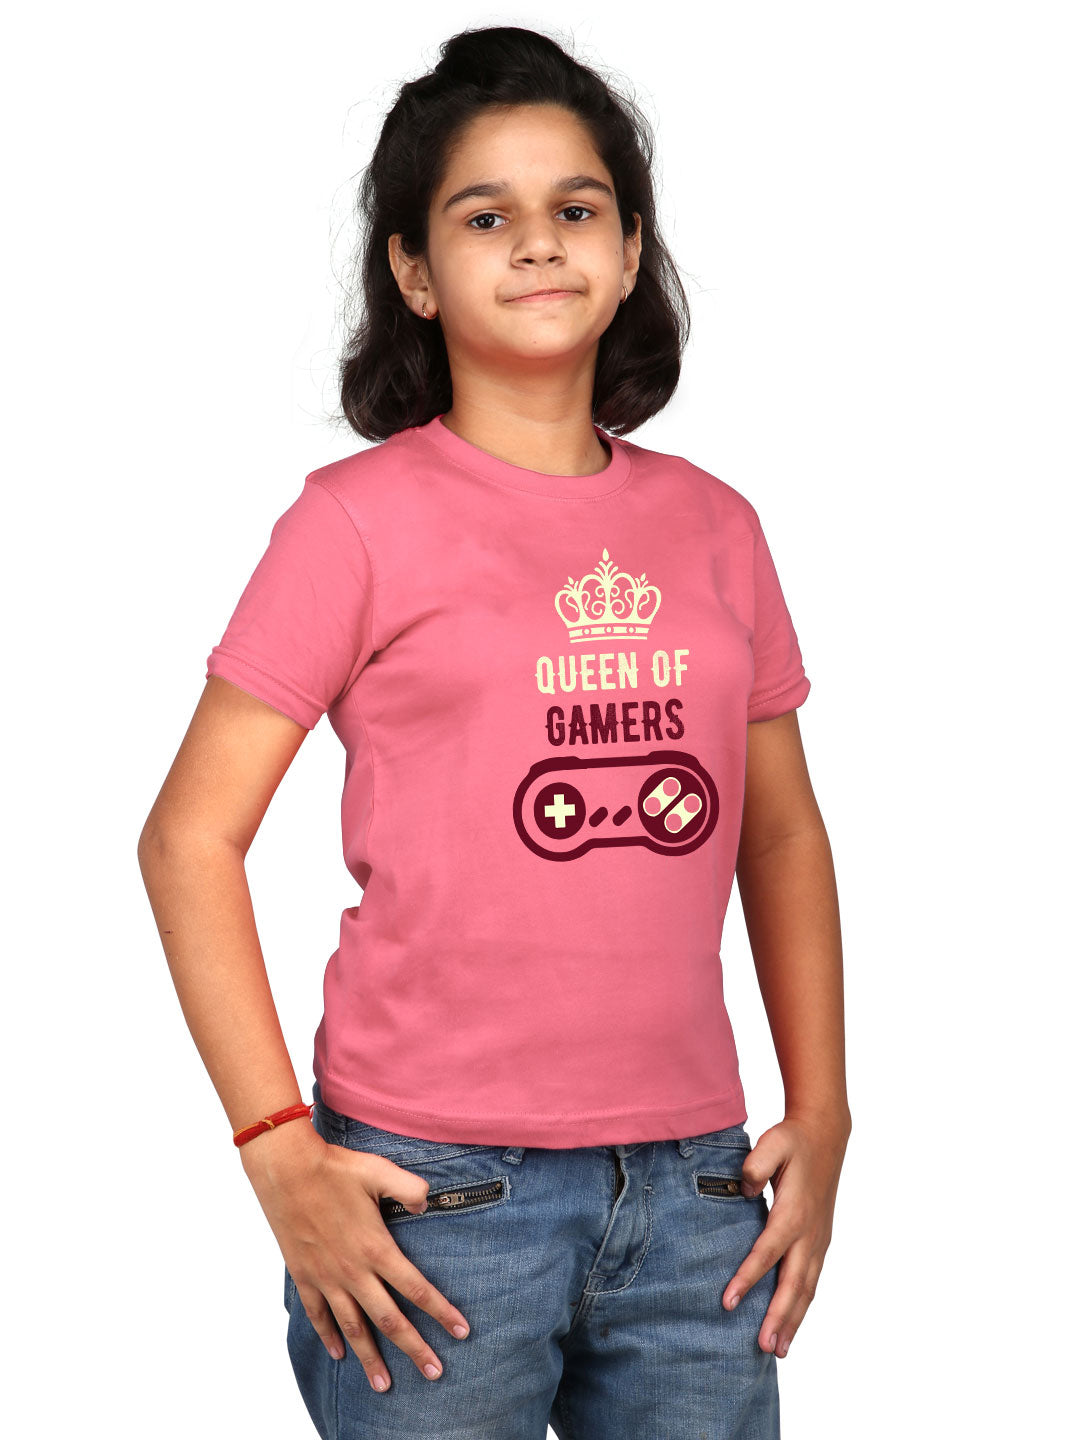 Queen of Gamers - Premium Round Neck Cotton Tees for Juniors - Magenta